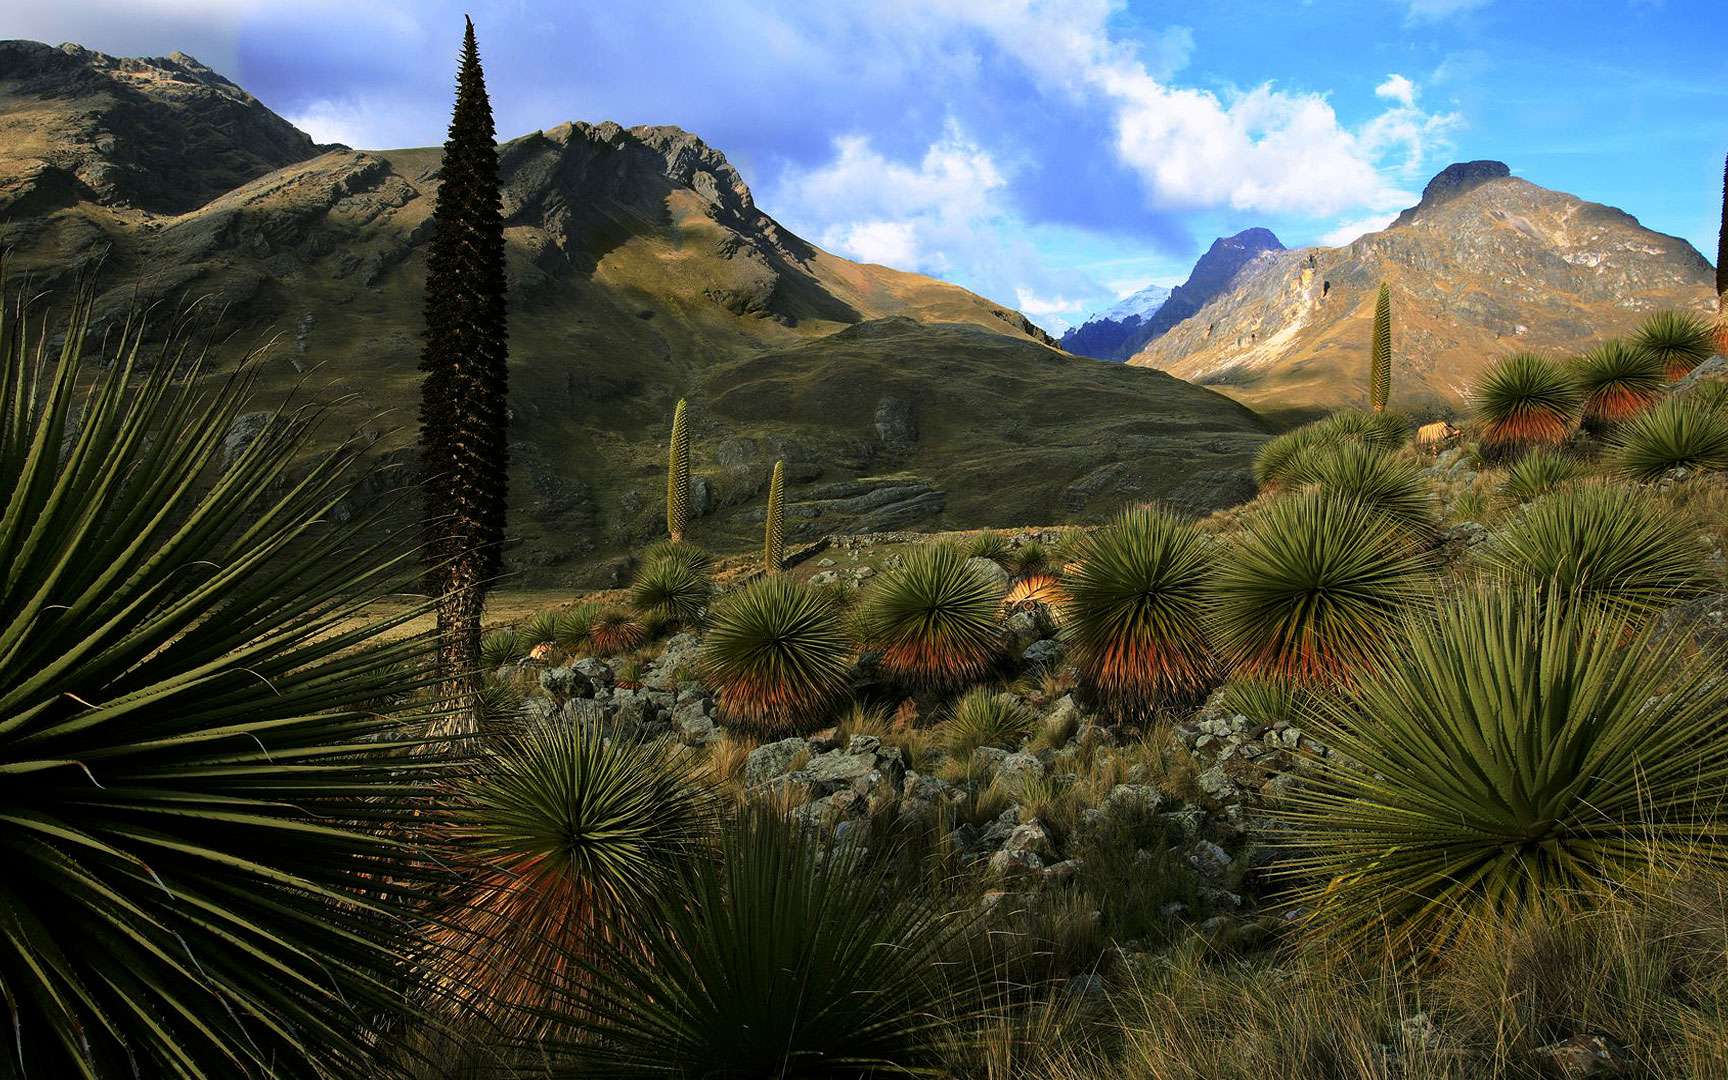 Puya raimondii, ou « kitanga », en langue quechua, connu comme « la Reine des Andes », est en danger de disparition. On ne trouve le végétal que sur les hauts plateaux de la cordillère, dans le nord du Chili, en Bolivie et au Pérou. Il est remarquable par la taille démesurée de ses inflorescences qui fait éclore des milliers de fleurs, et qui contient près de 6 millions de graines. La broméliacée atteint sa maturité reproductive vers 40 ans. Elle attire de nombreux insectes et un colibri géant (Patagona gigas) qui se régale du nectar de ses fleurs. © Cyril Ruoso, tous droits réservés, reproduction interdite